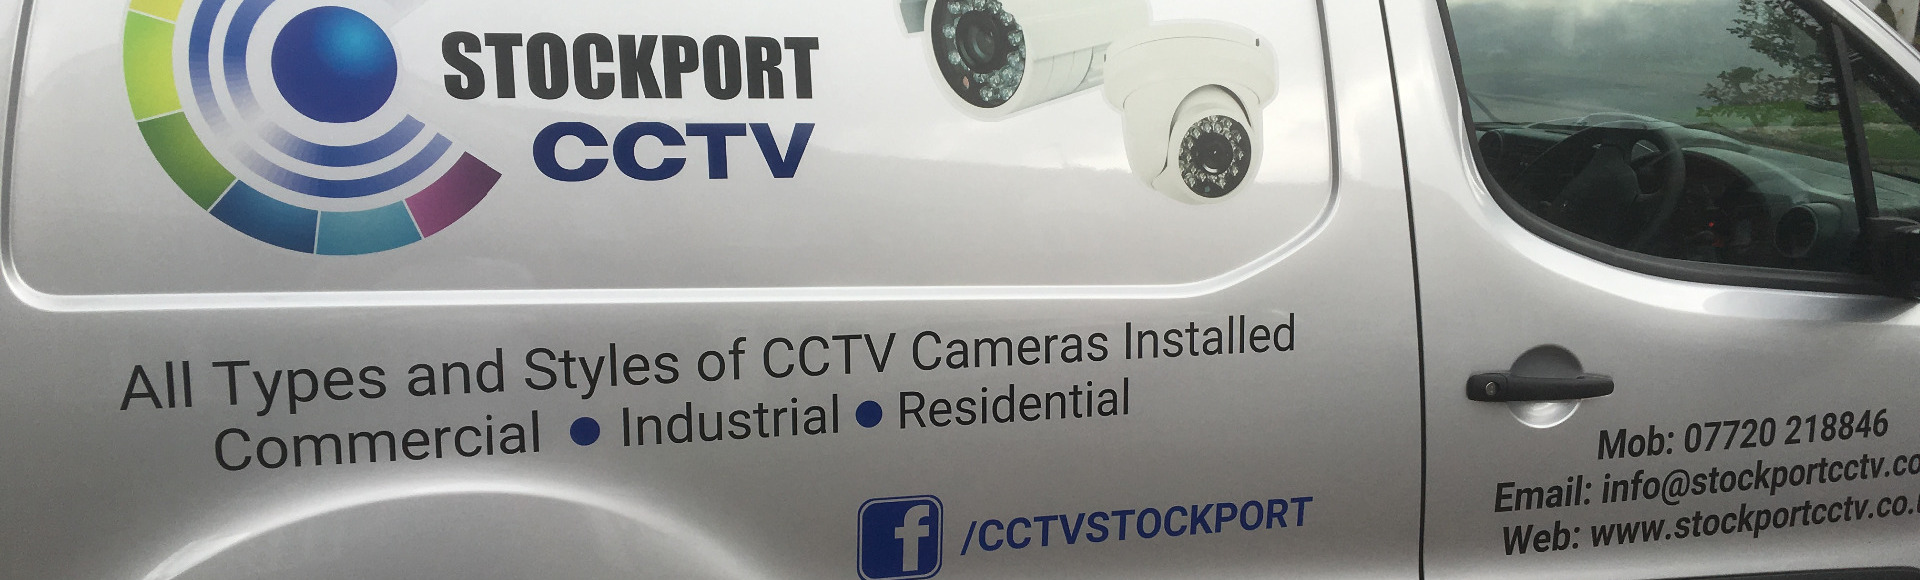 Stockport CCTV